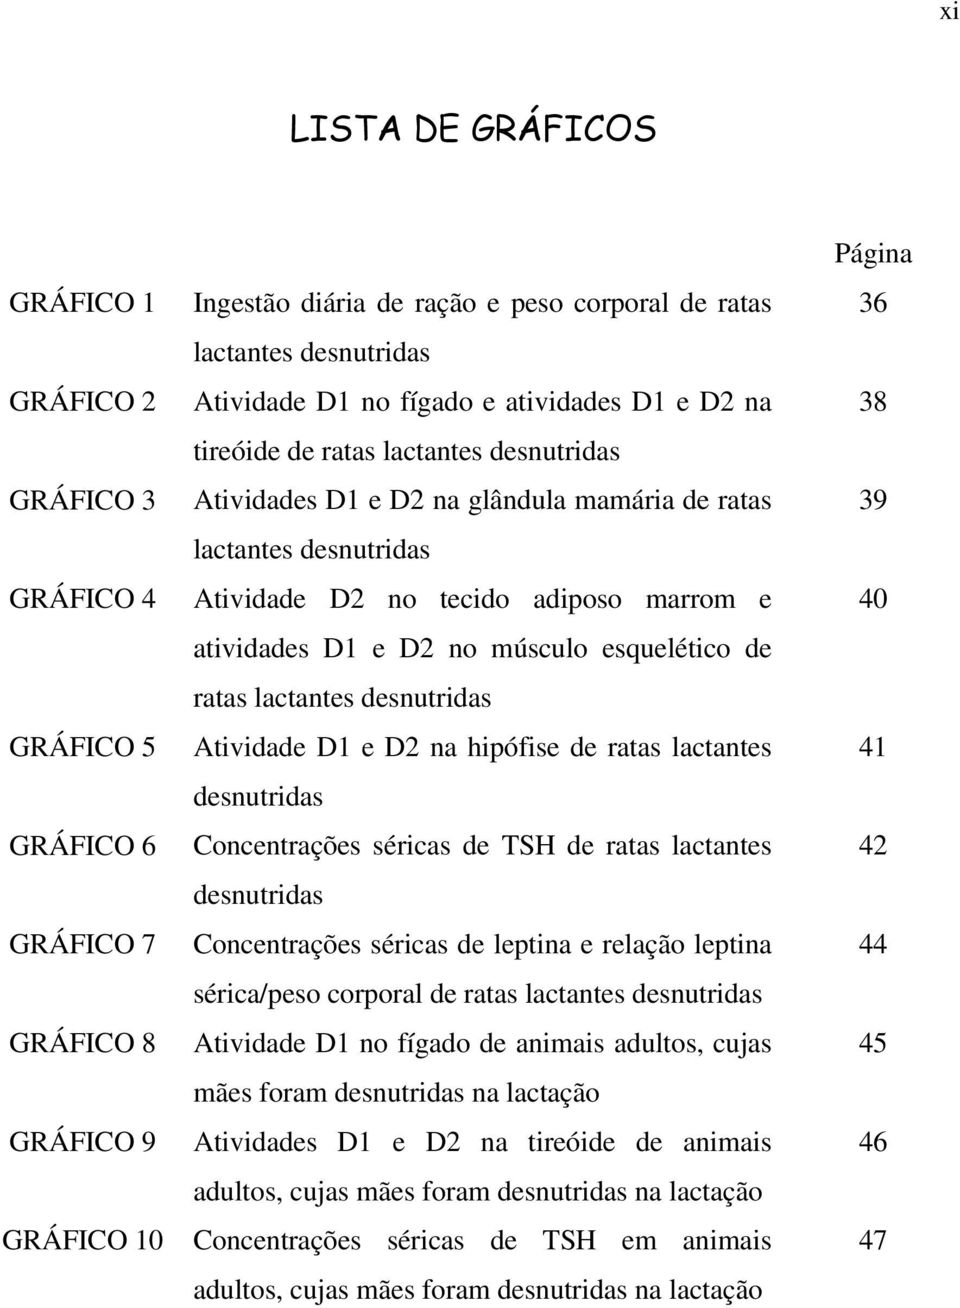 atividades D1 e D2 no músculo esquelético de ratas lactantes desnutridas Atividade D1 e D2 na hipófise de ratas lactantes desnutridas Concentrações séricas de TSH de ratas lactantes desnutridas